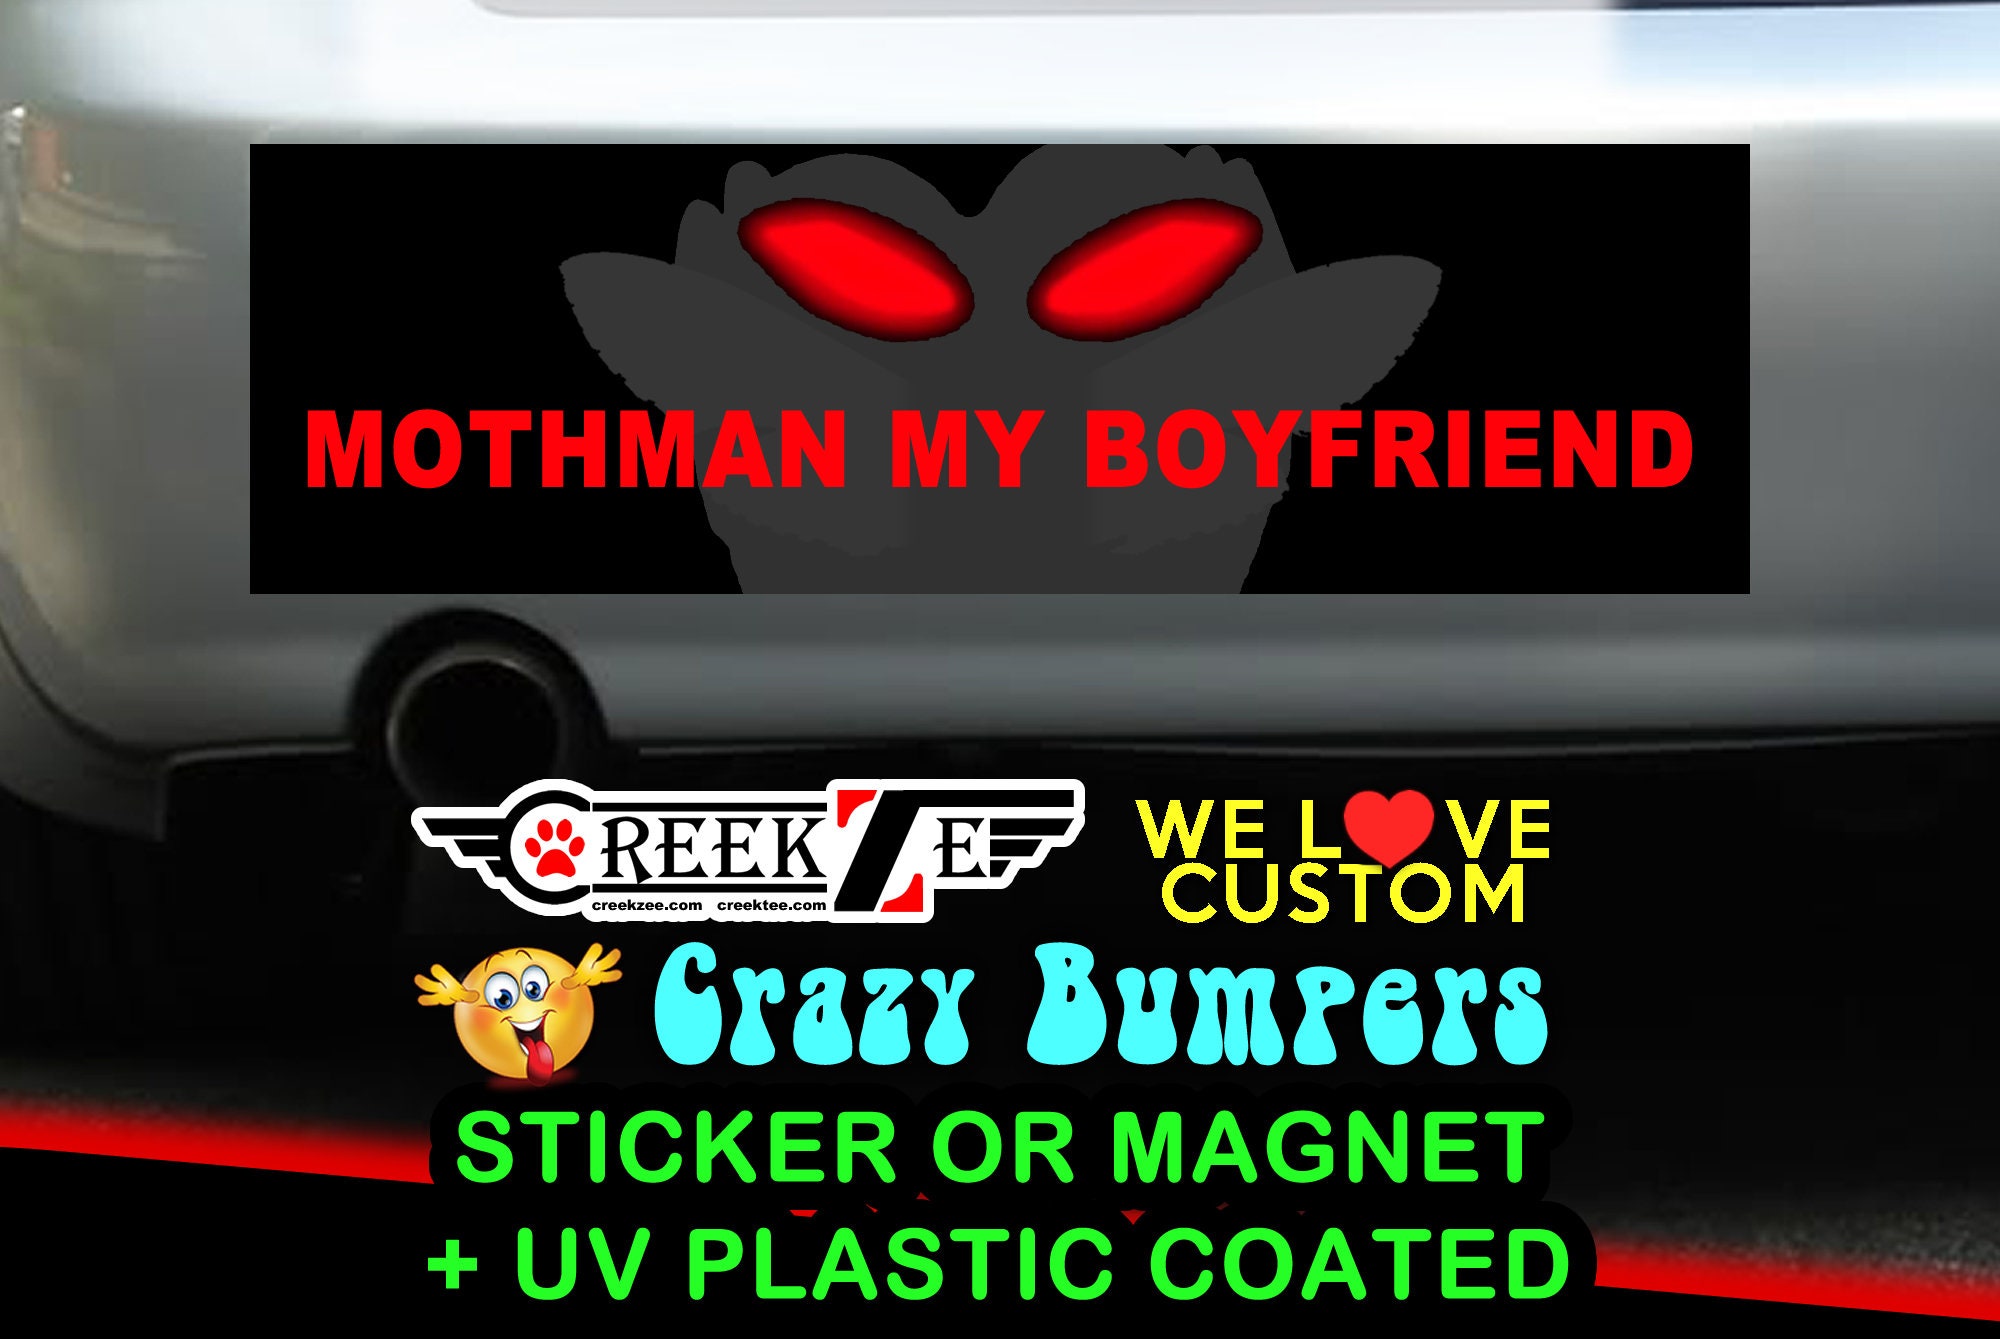 Mothman my boyfriend Bumper Sticker or Magnet in new sizes, 4